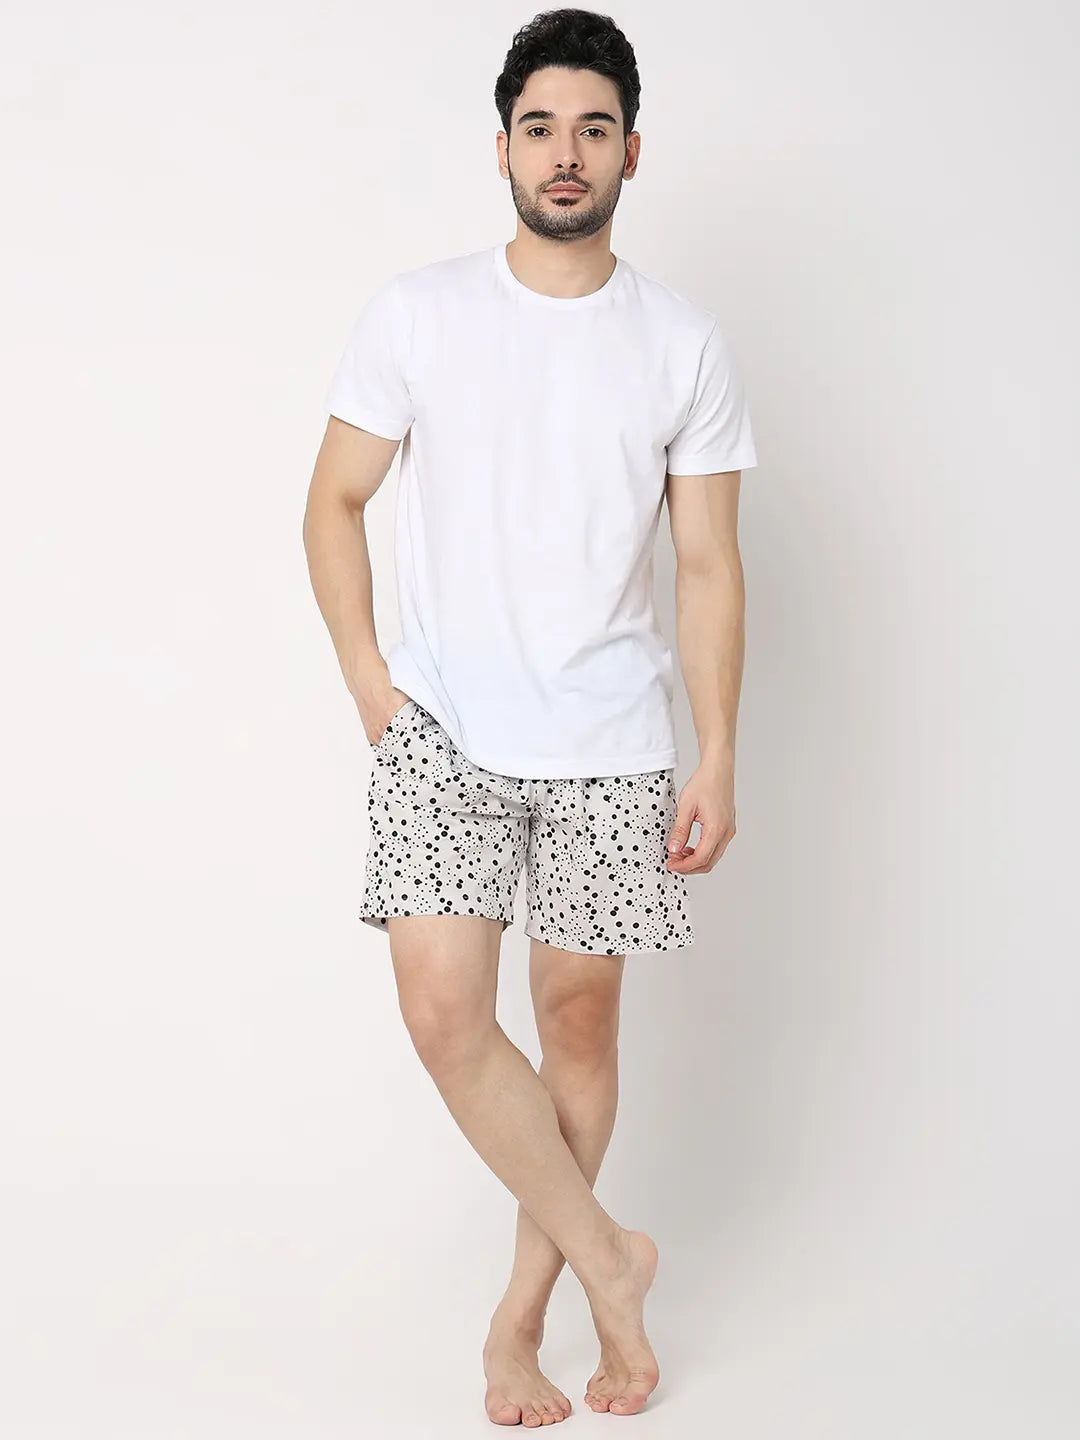 Underjeans by Spykar Men Premium White Cotton Blend Regular Fit Boxer Shorts